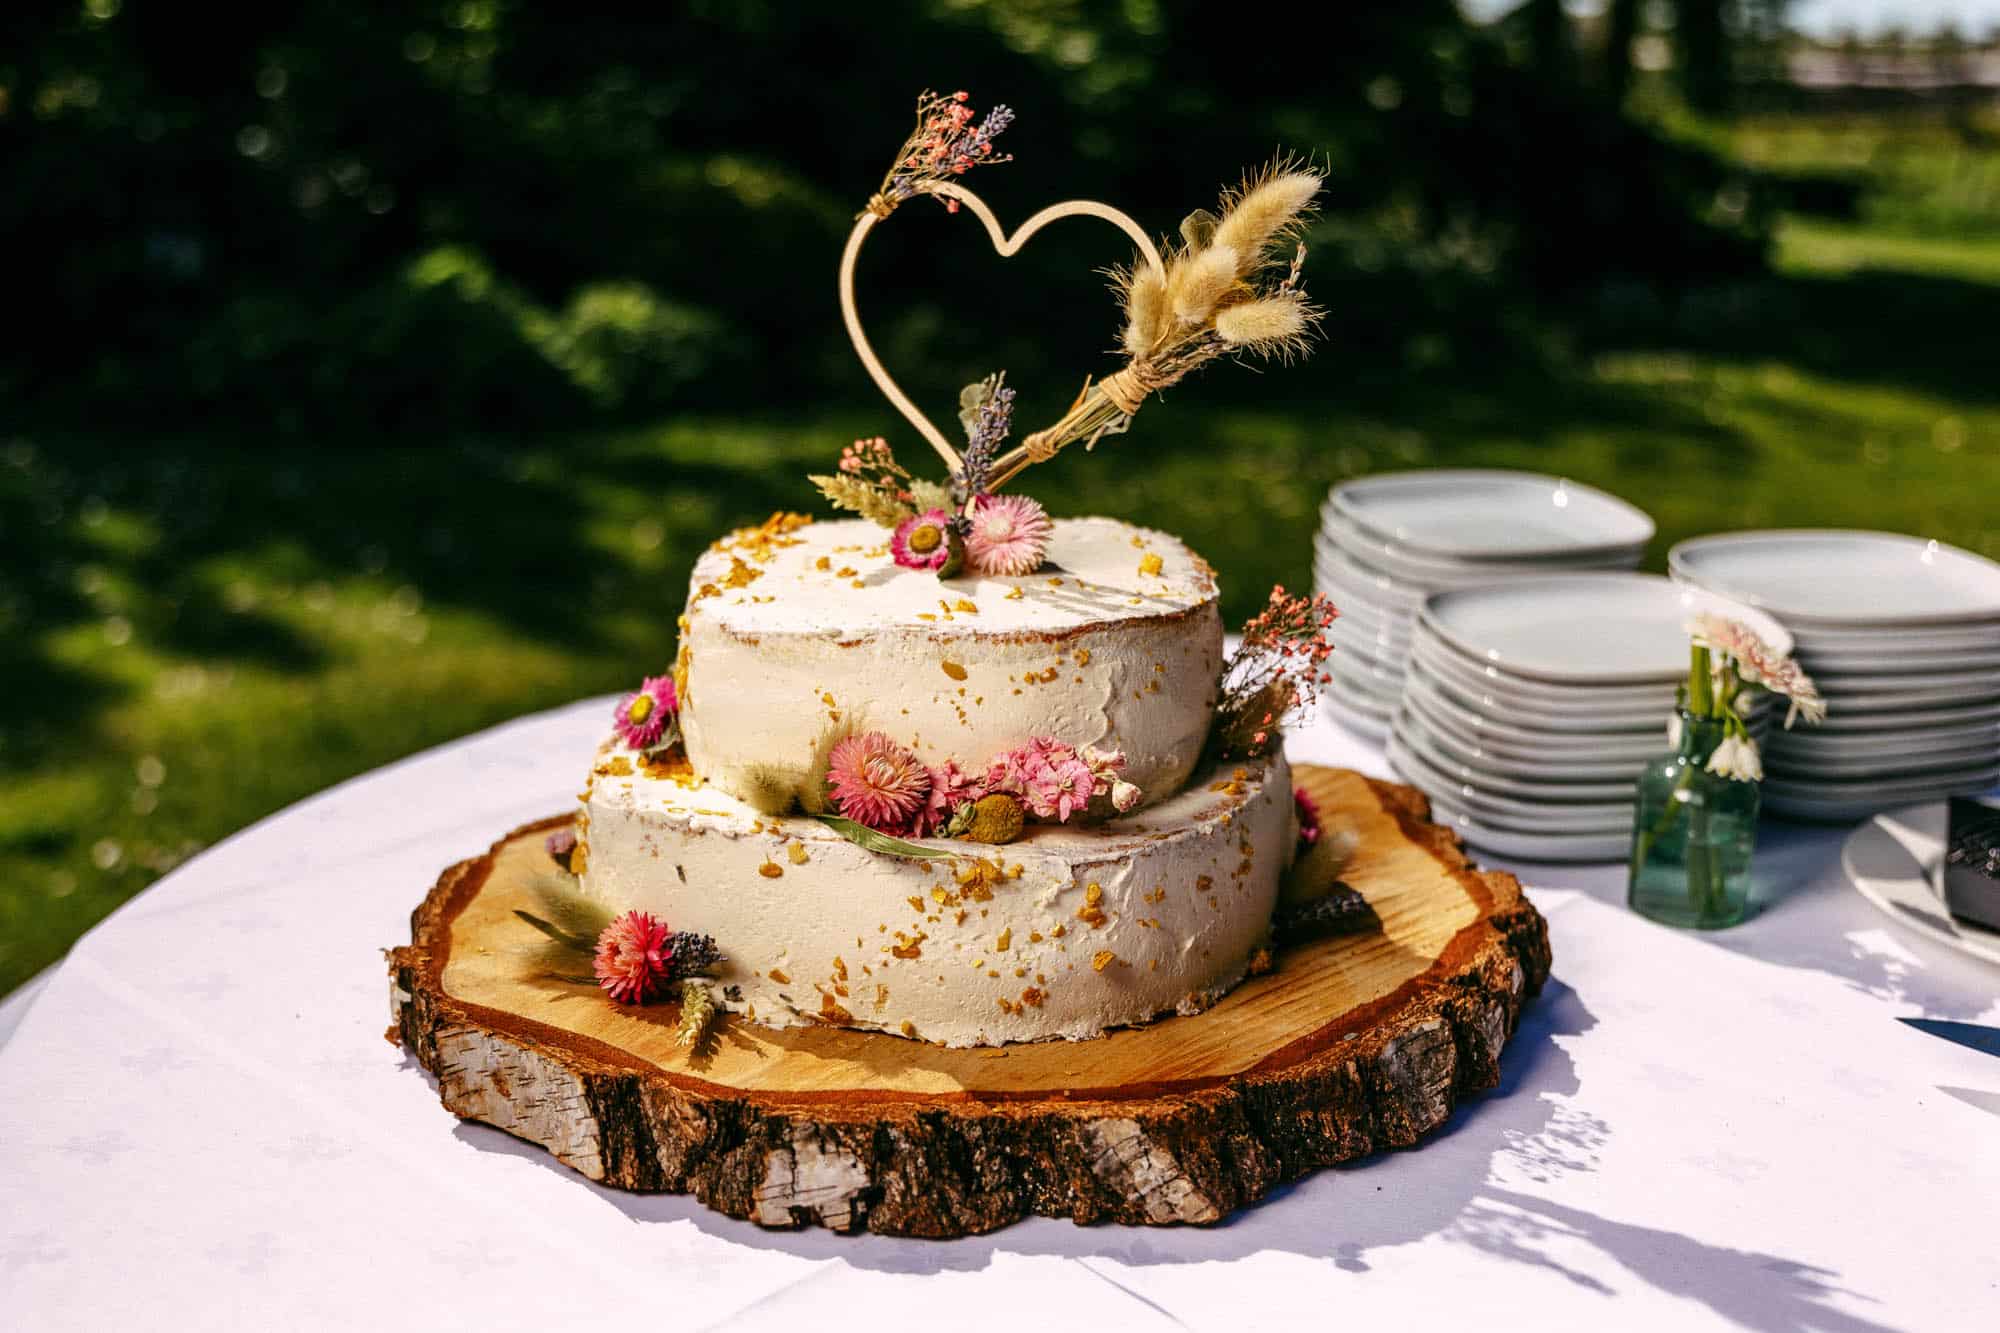 Beschrijving: Een bruidstaart met bloemen bovenop een houten plank.